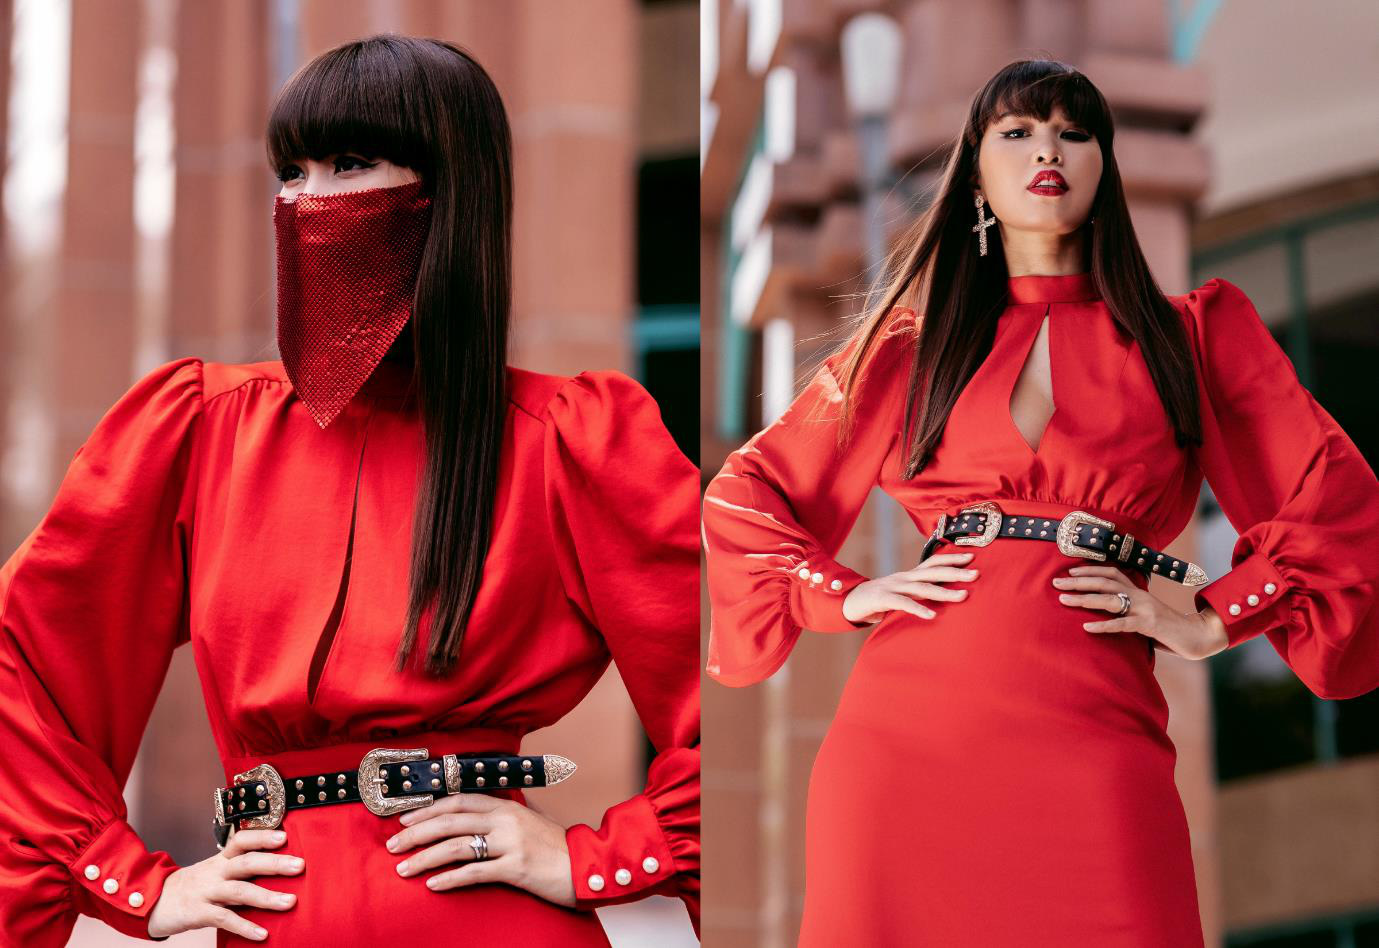 Siêu mẫu Hà Anh thần thái ngút ngàn trong outfit màu đỏ nổi bần bật cùng mái tóc dài thẳng suôn mượt, mái bằng đơn giản.